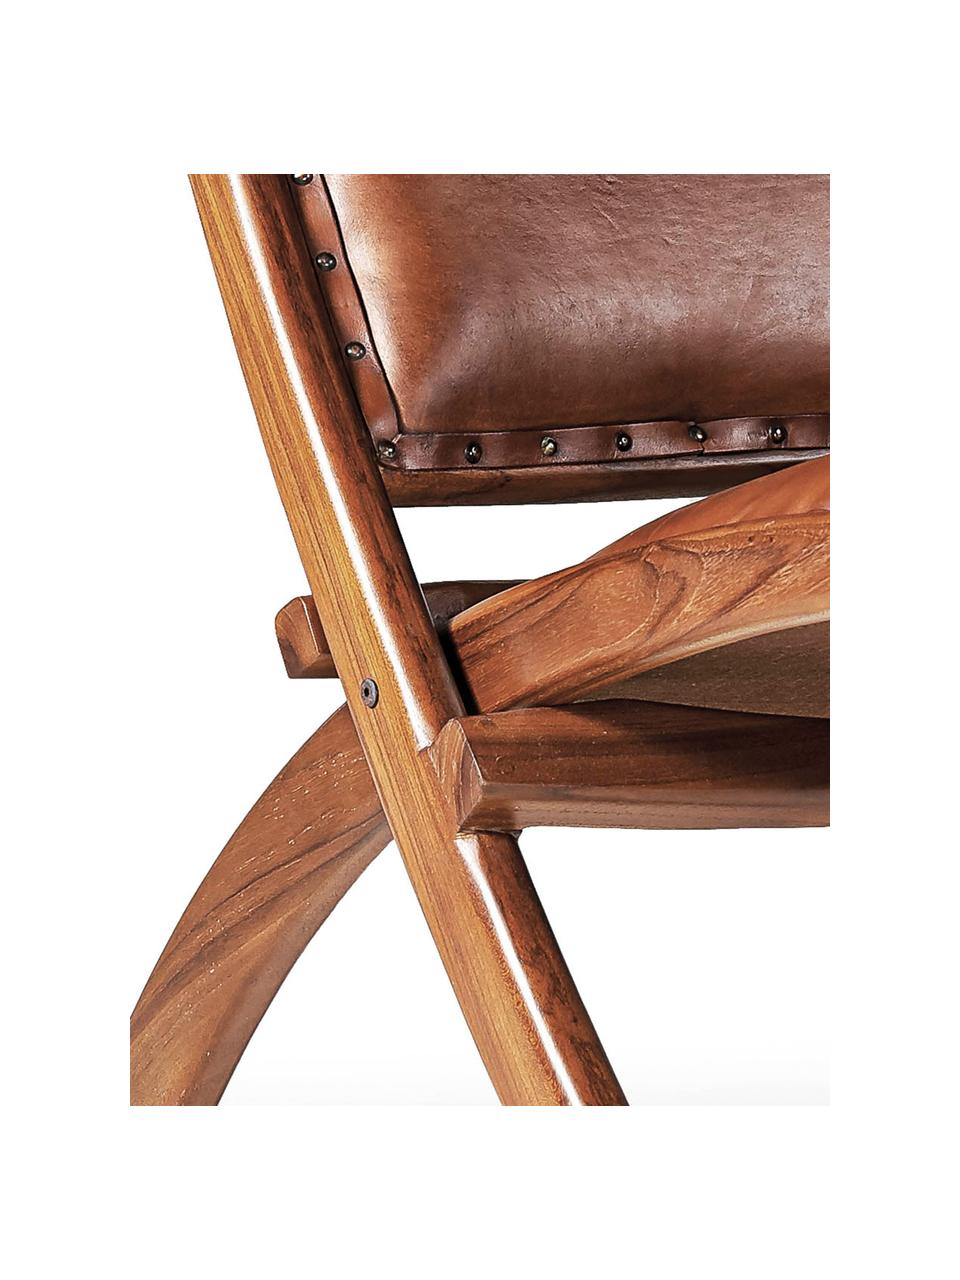 Fotel wypoczynkowy ze skóry Low, Tapicerka: skóra, Stelaż: drewno mindi, Skórzany brązowy, S 65 x G 88 cm